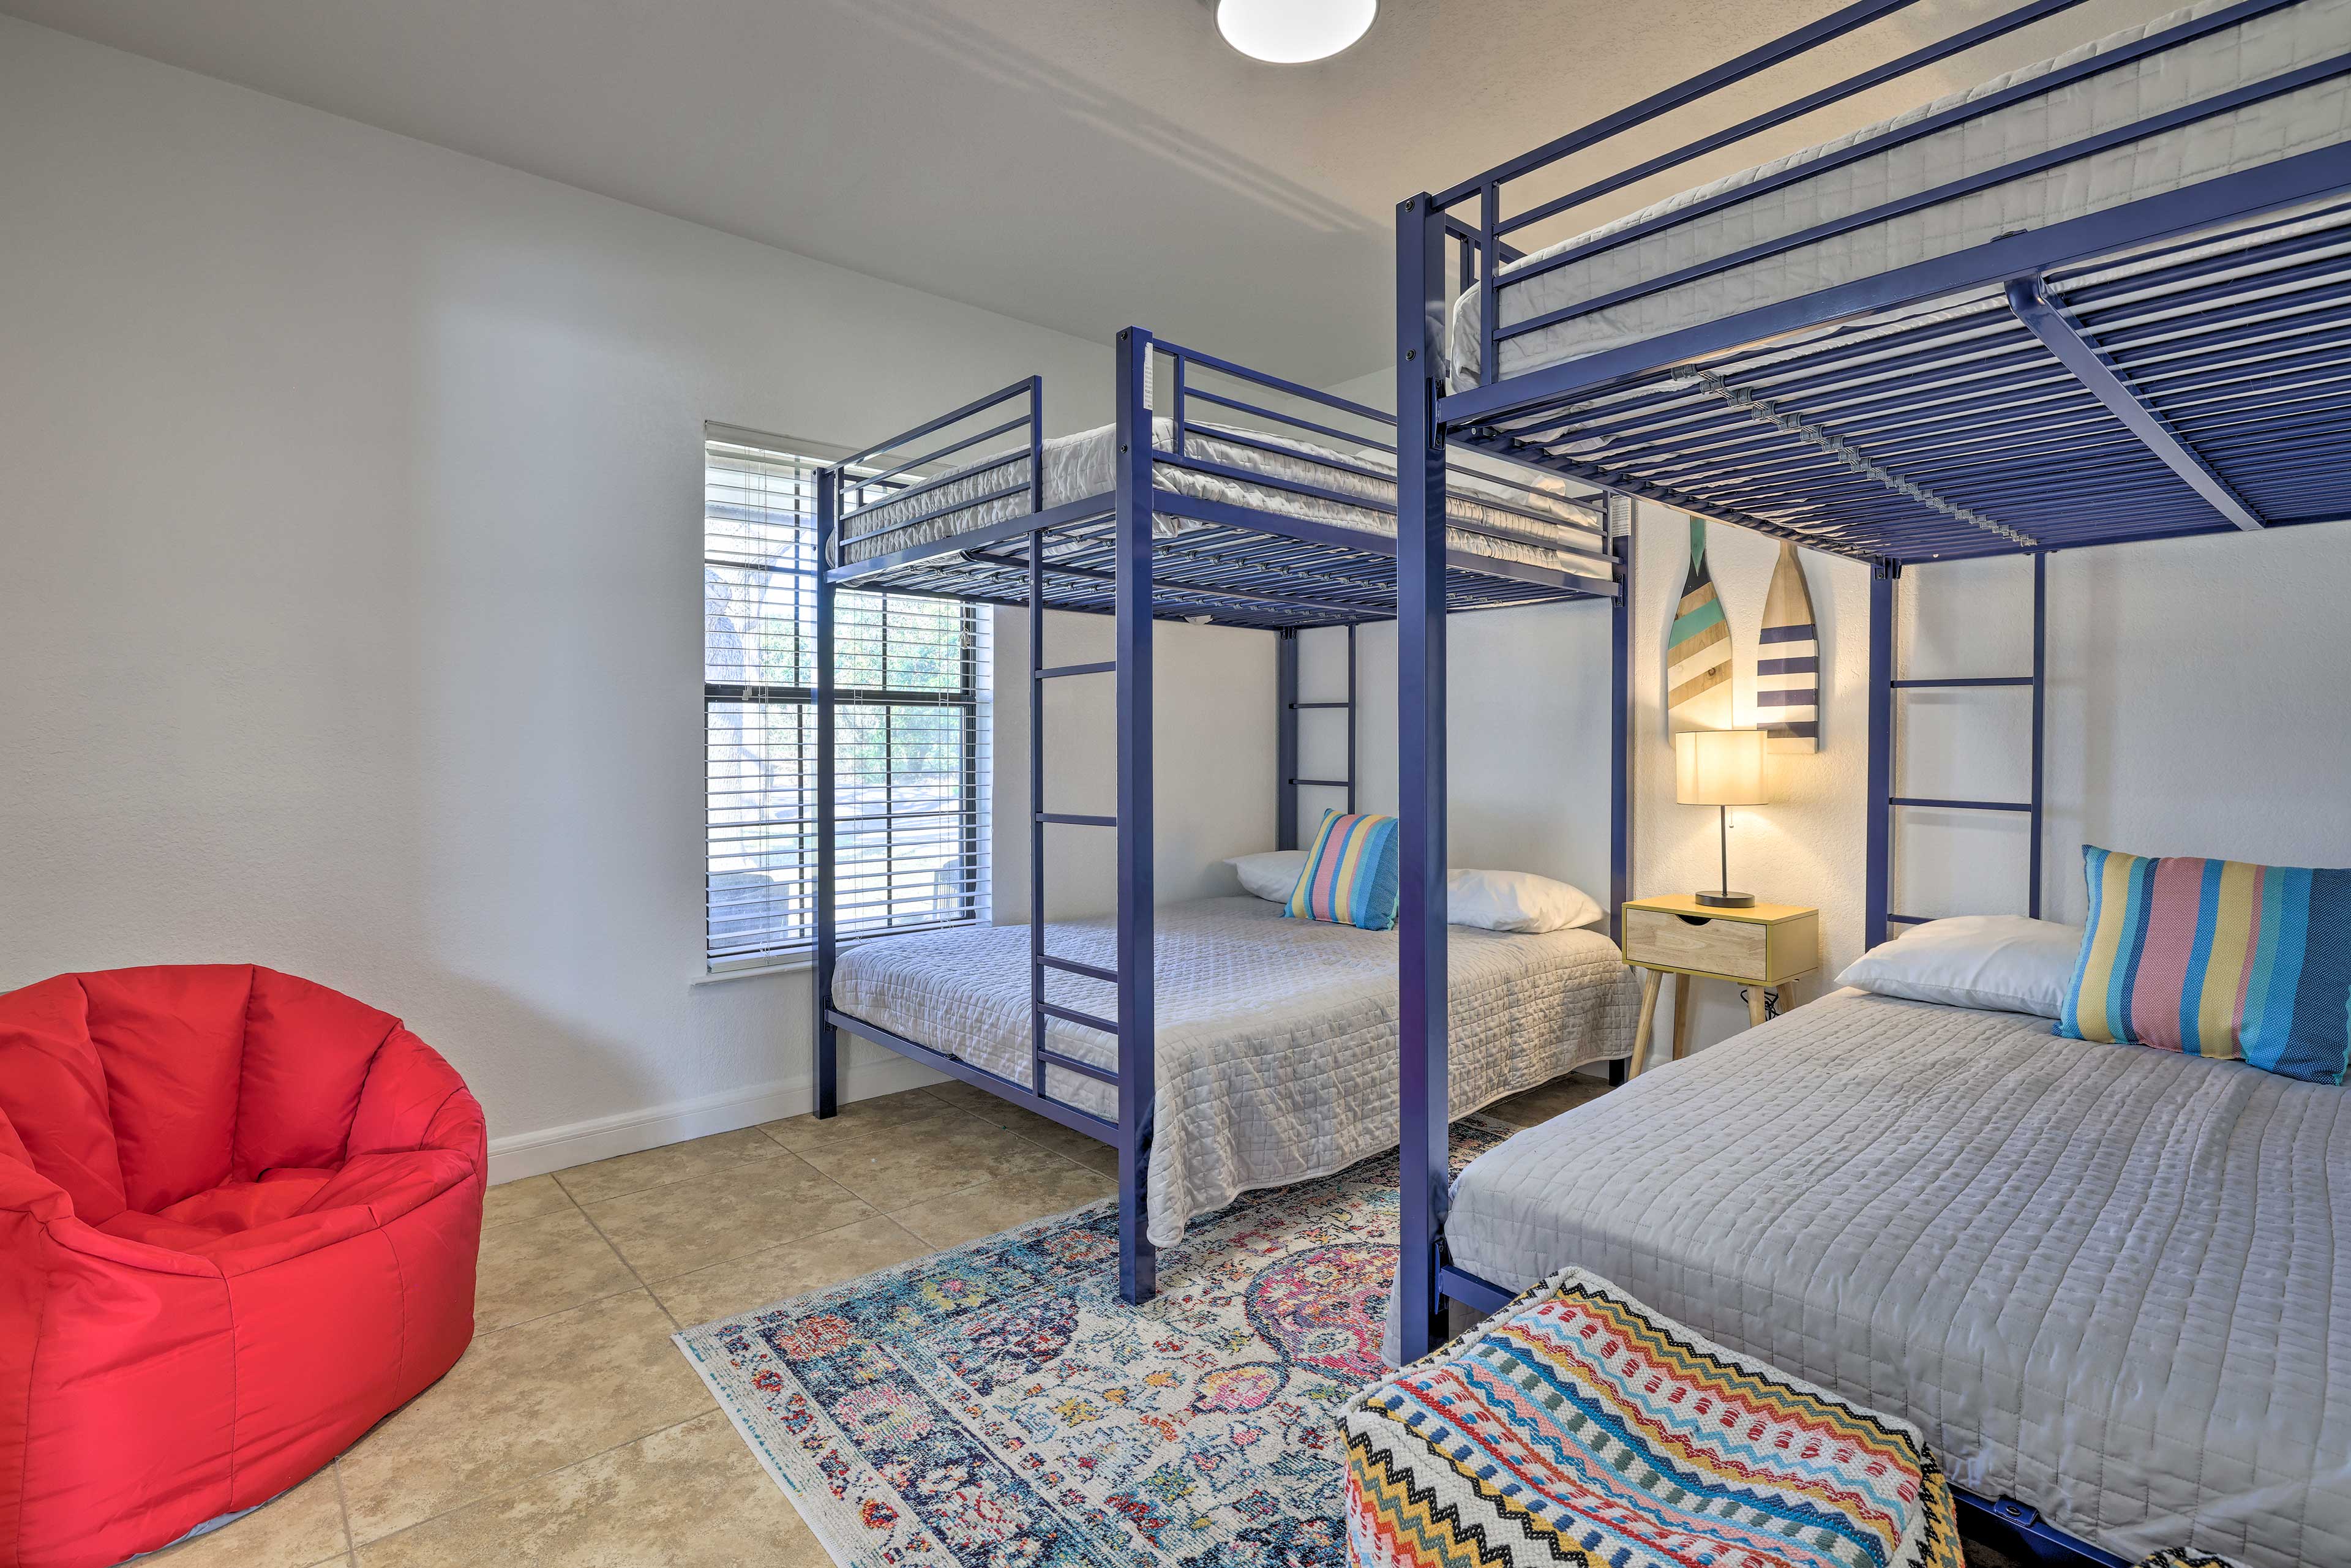 Bedroom 3 | 2 Full Bunk Beds